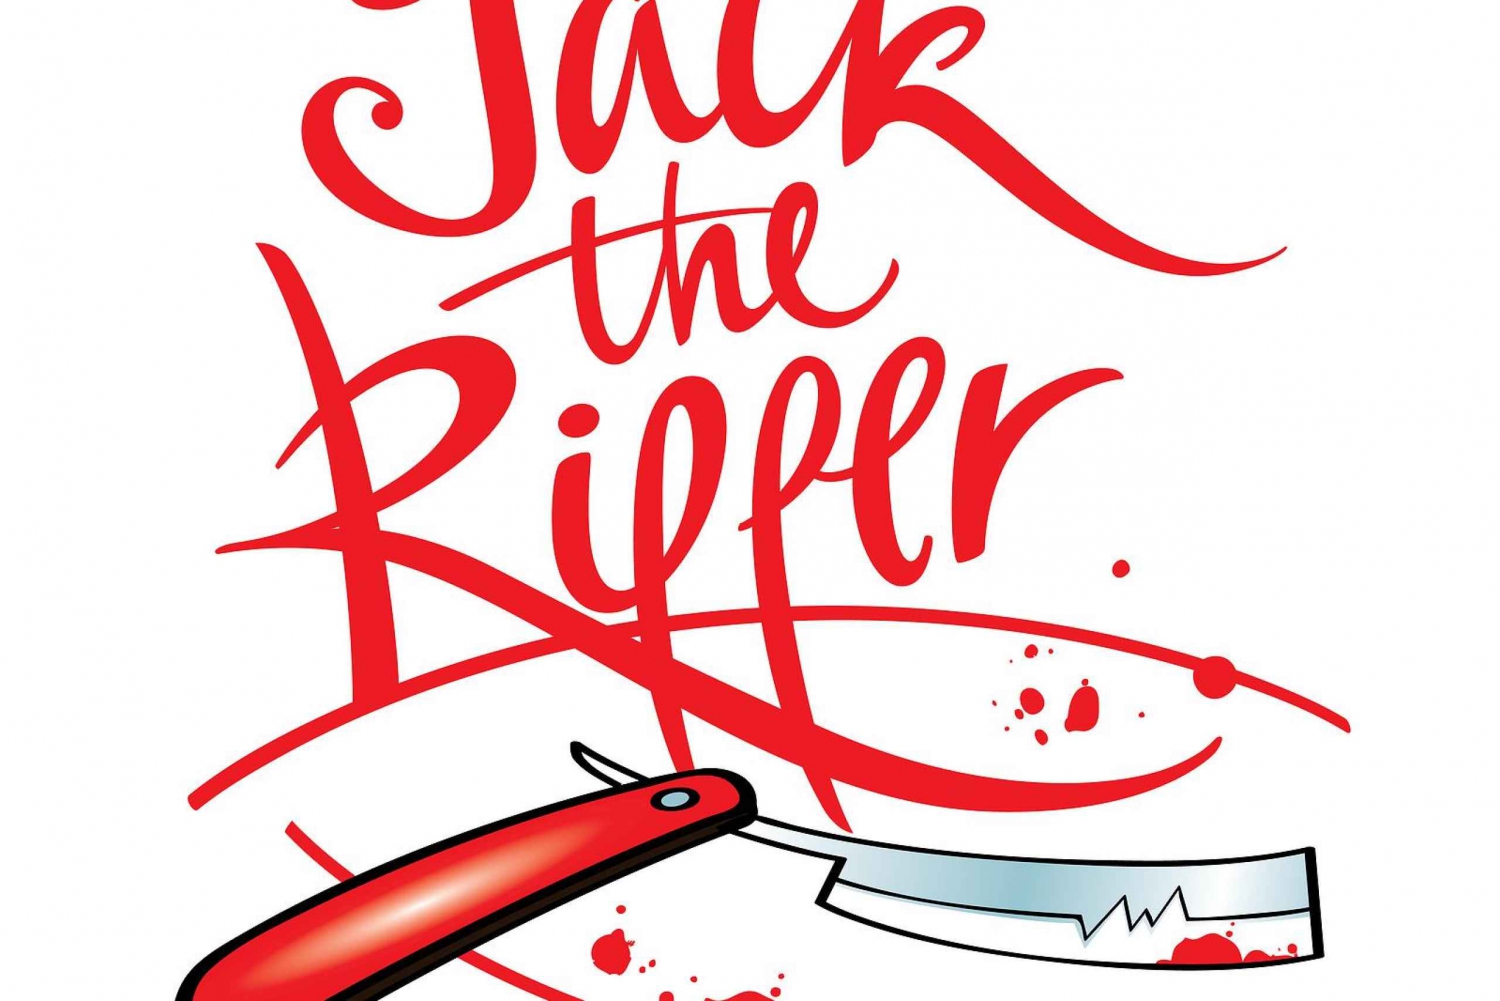 Jack de Ripper: Solve the Crime Wandeltour (Kinderen gratis!)